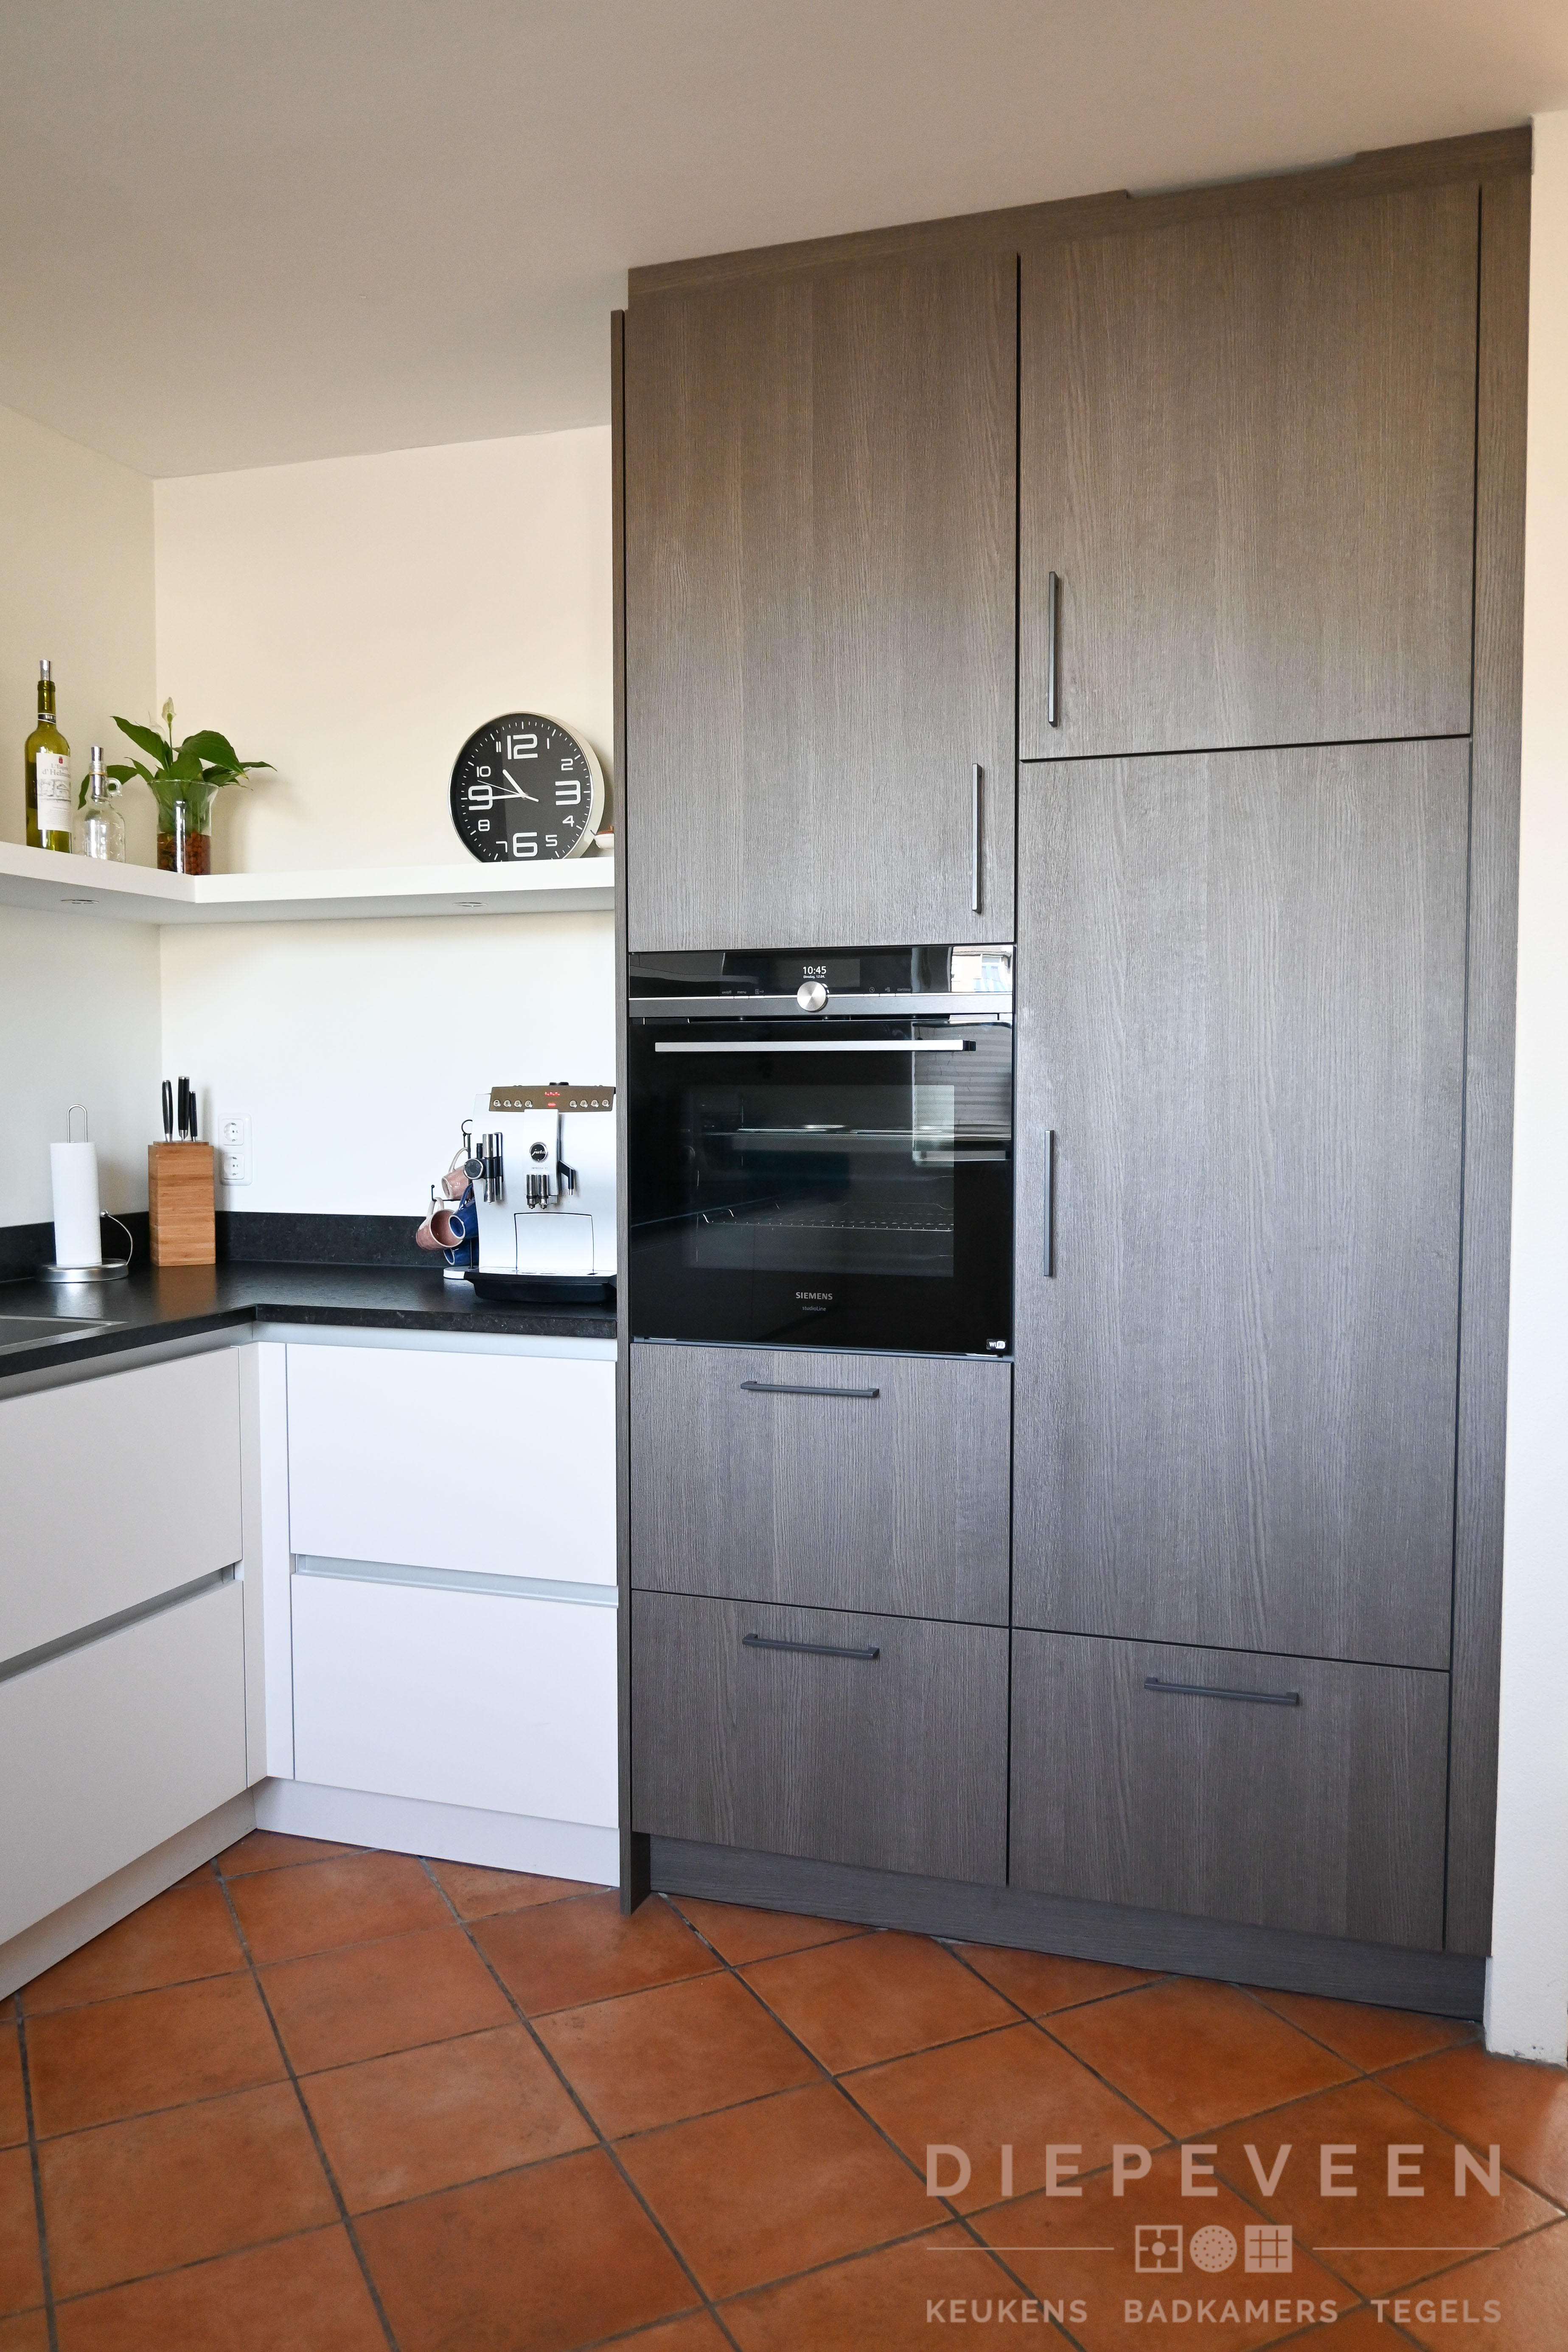 Foto : Wit keukenblok met donker houtlook kast